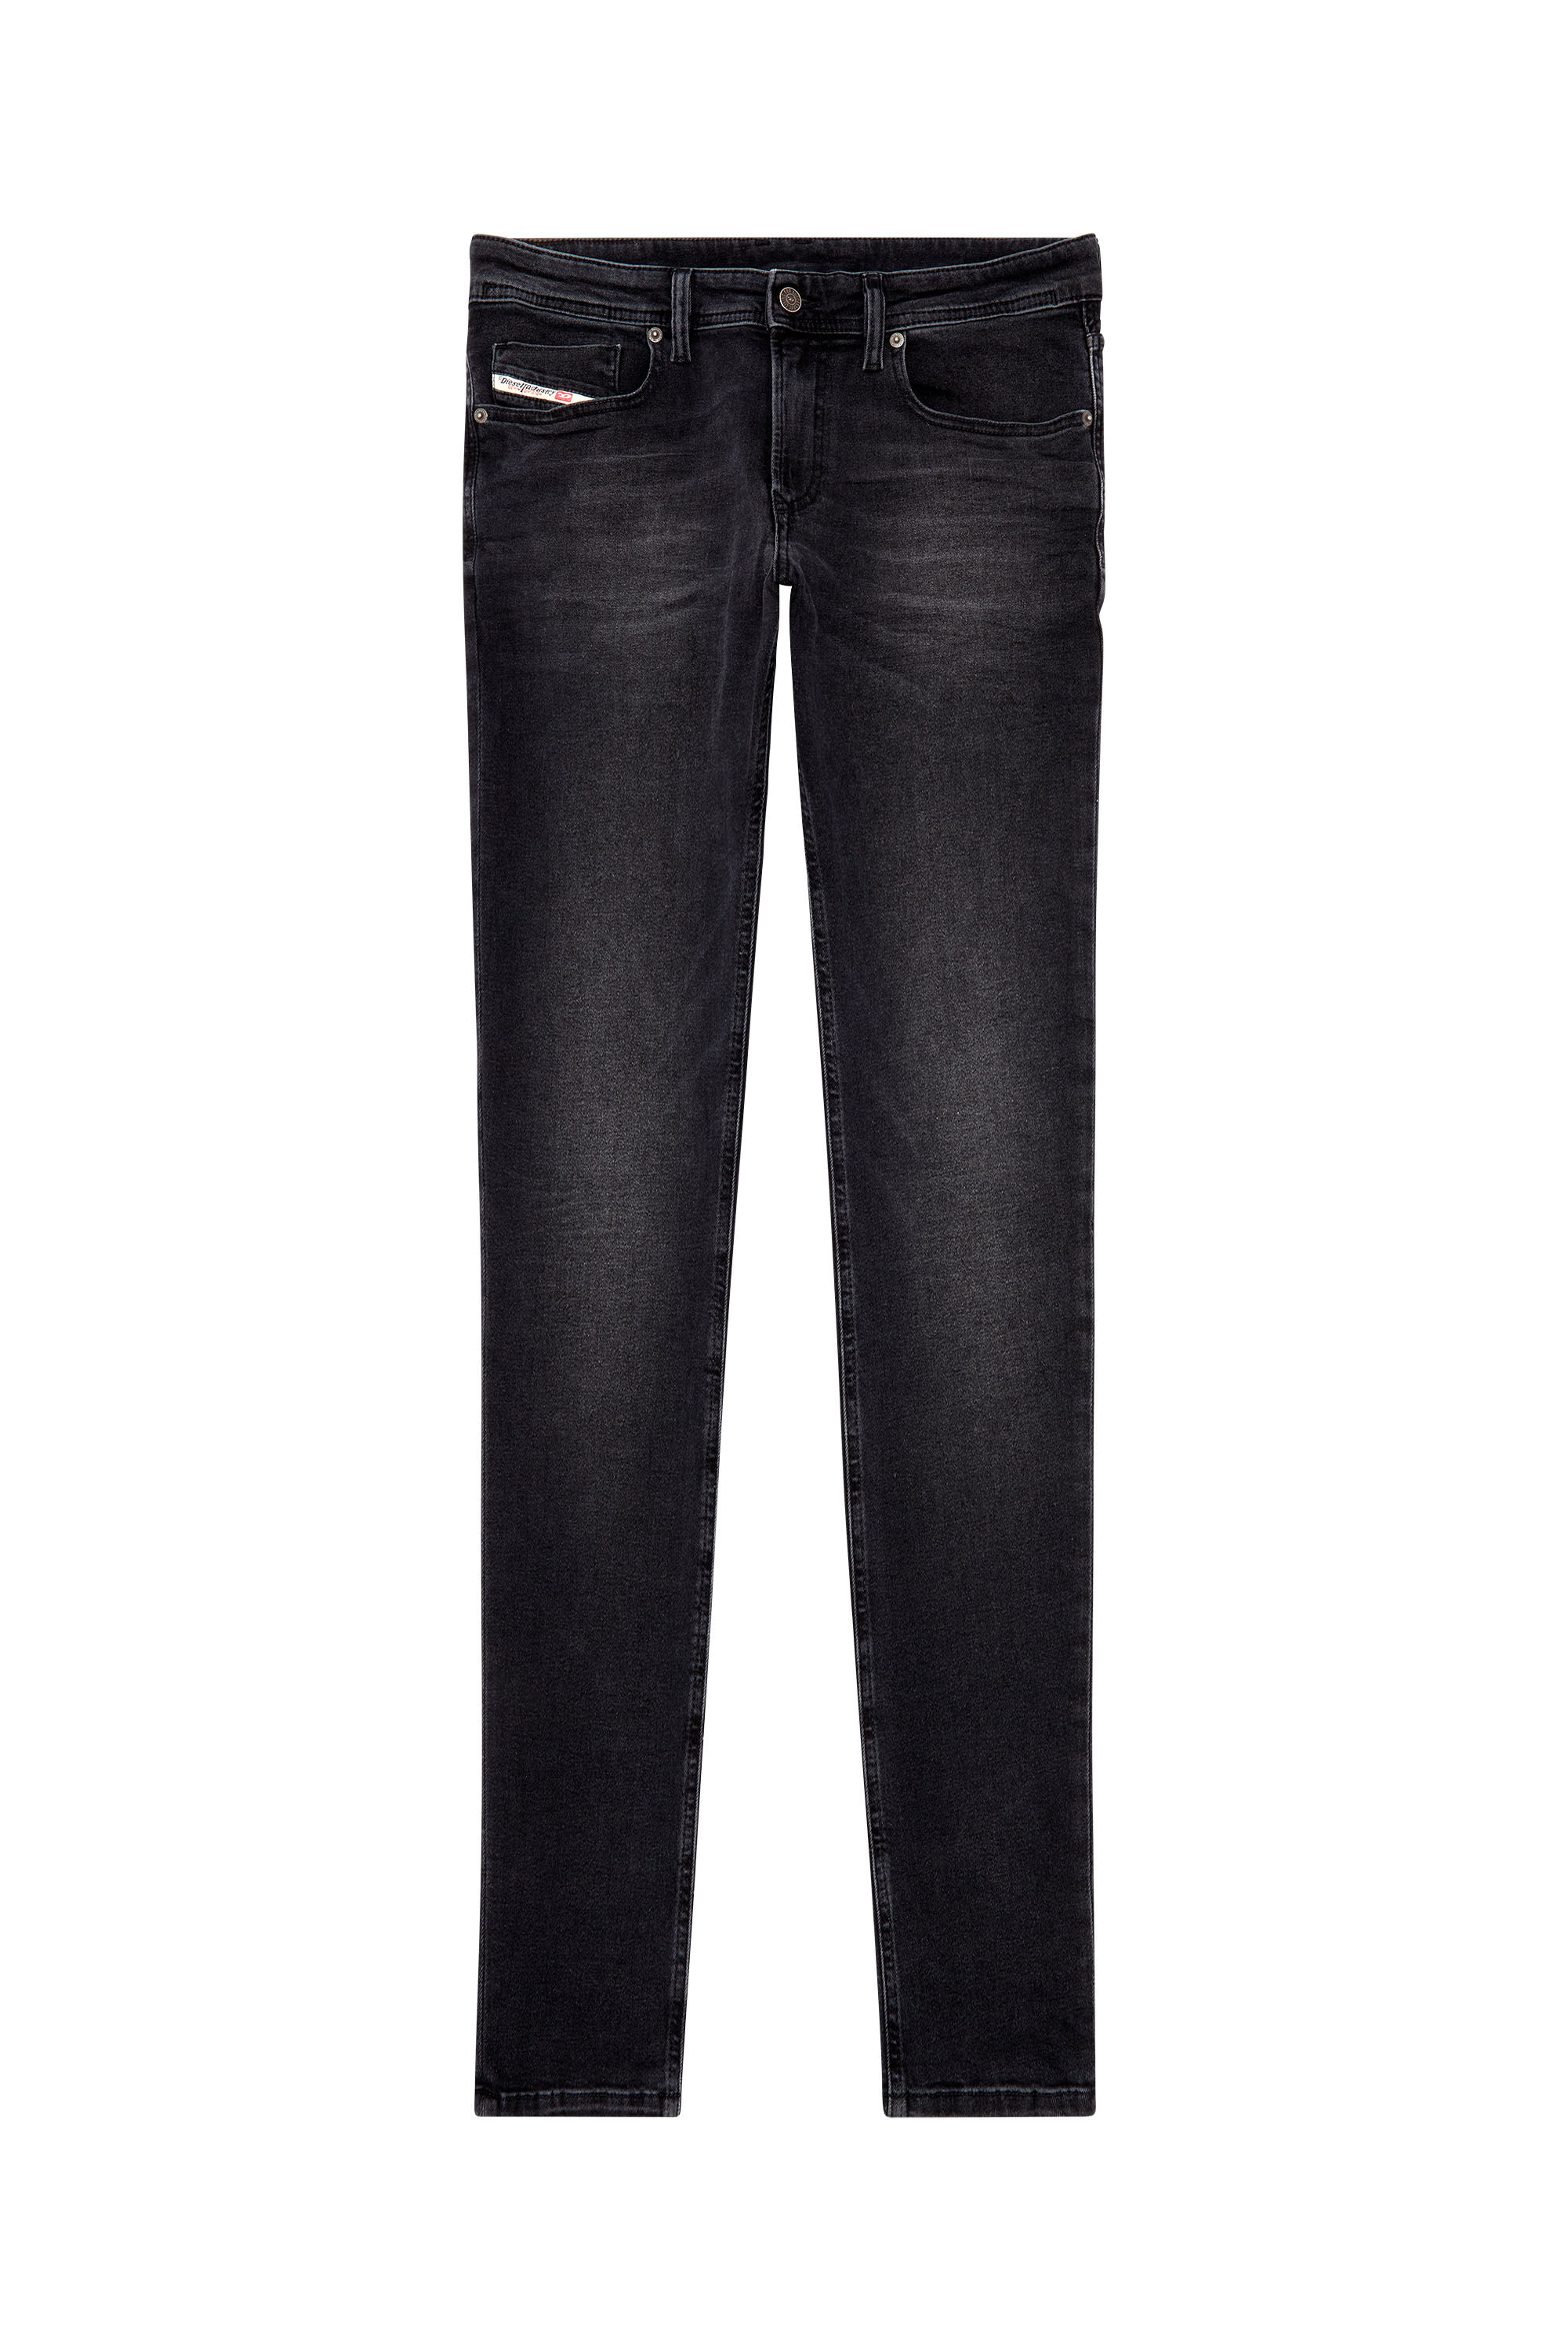 Diesel - Man Skinny Jeans 1979 Sleenker 0PFAS, Black/Dark grey - Image 2